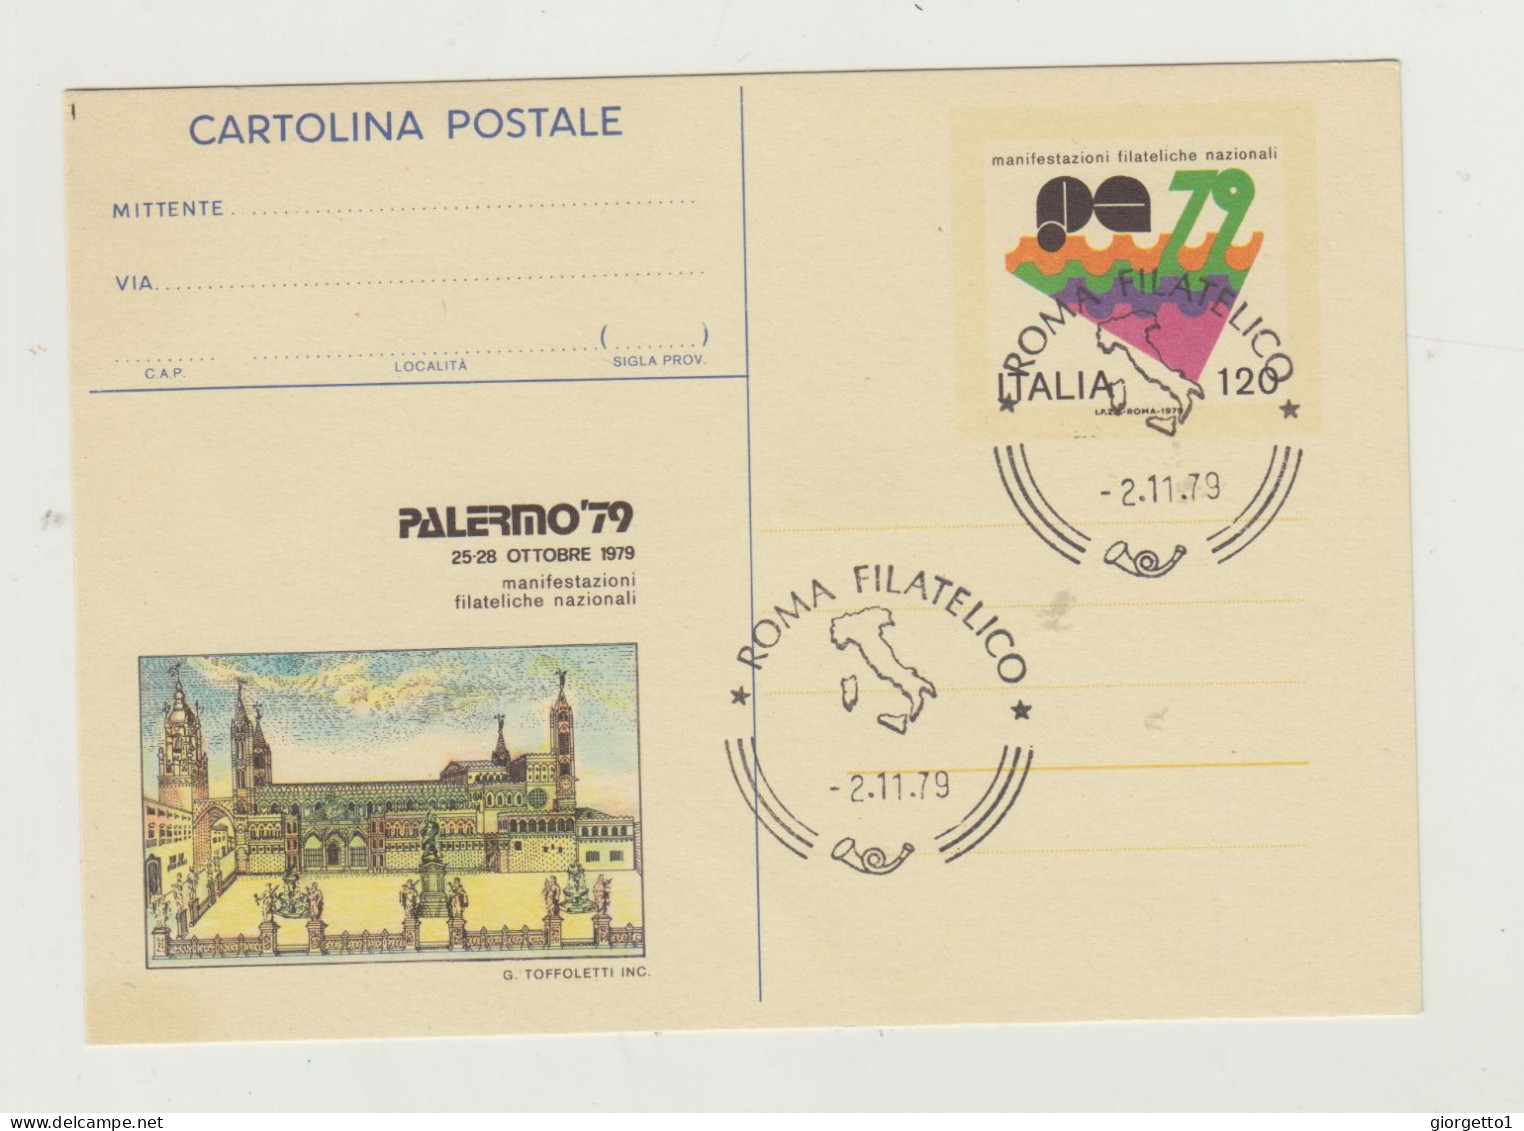 CARTOLINA POSTALE MANIFESTAZIONI FILATELICHE POSTALI - PALERMO 79 - ANNULLO ROMA FILATELICO 2-11-1979 - Poststempel